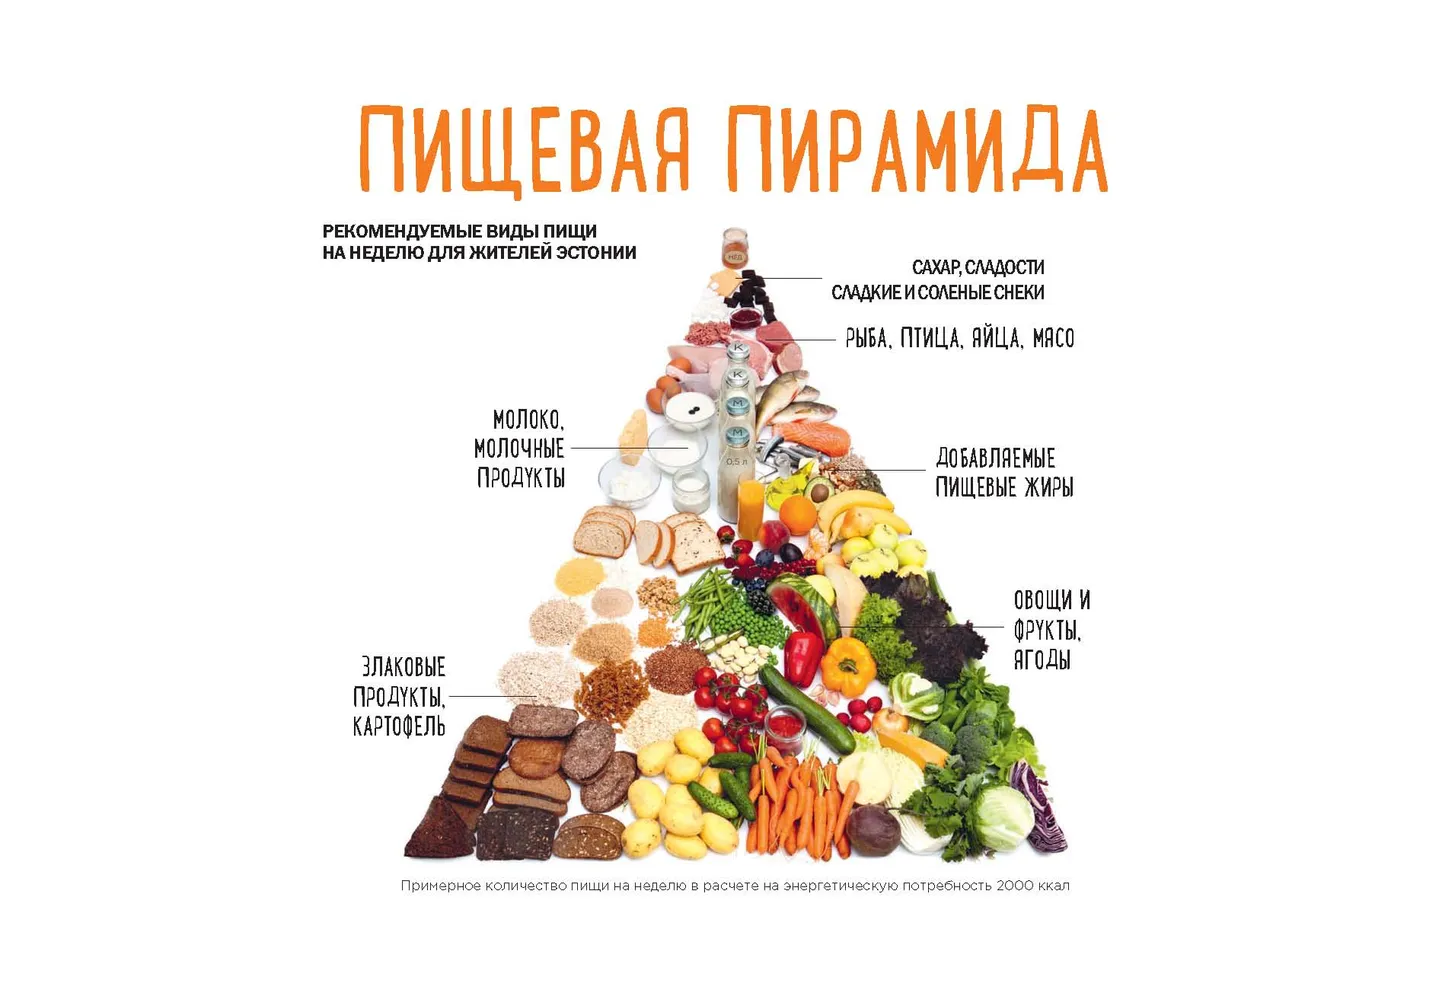 Пищевая пирамида показывает, чего стоит есть меньше, а чего больше.